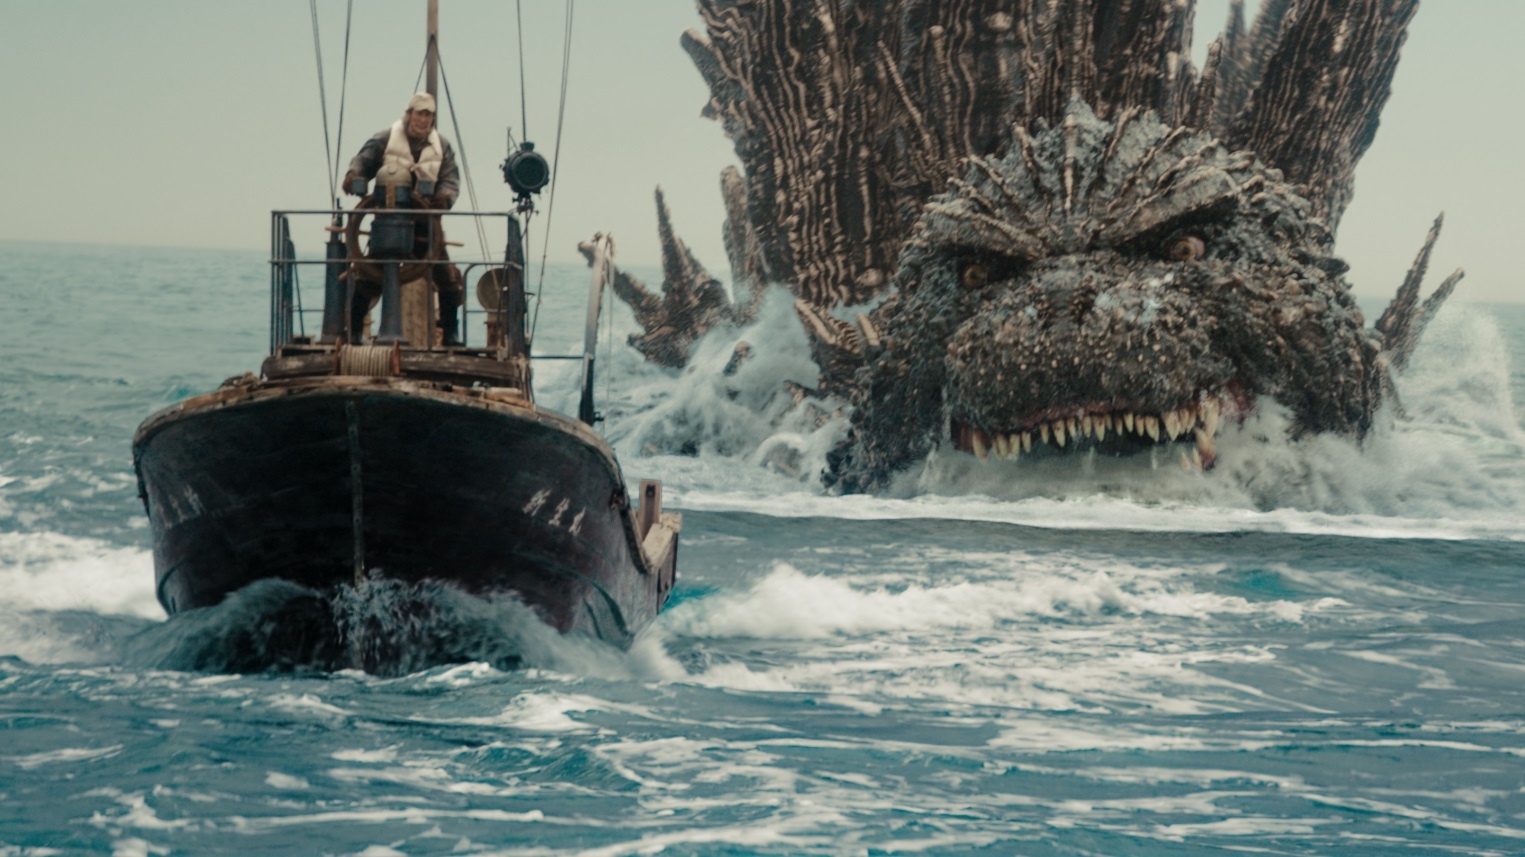 Godzilla menacingly pursues a boat